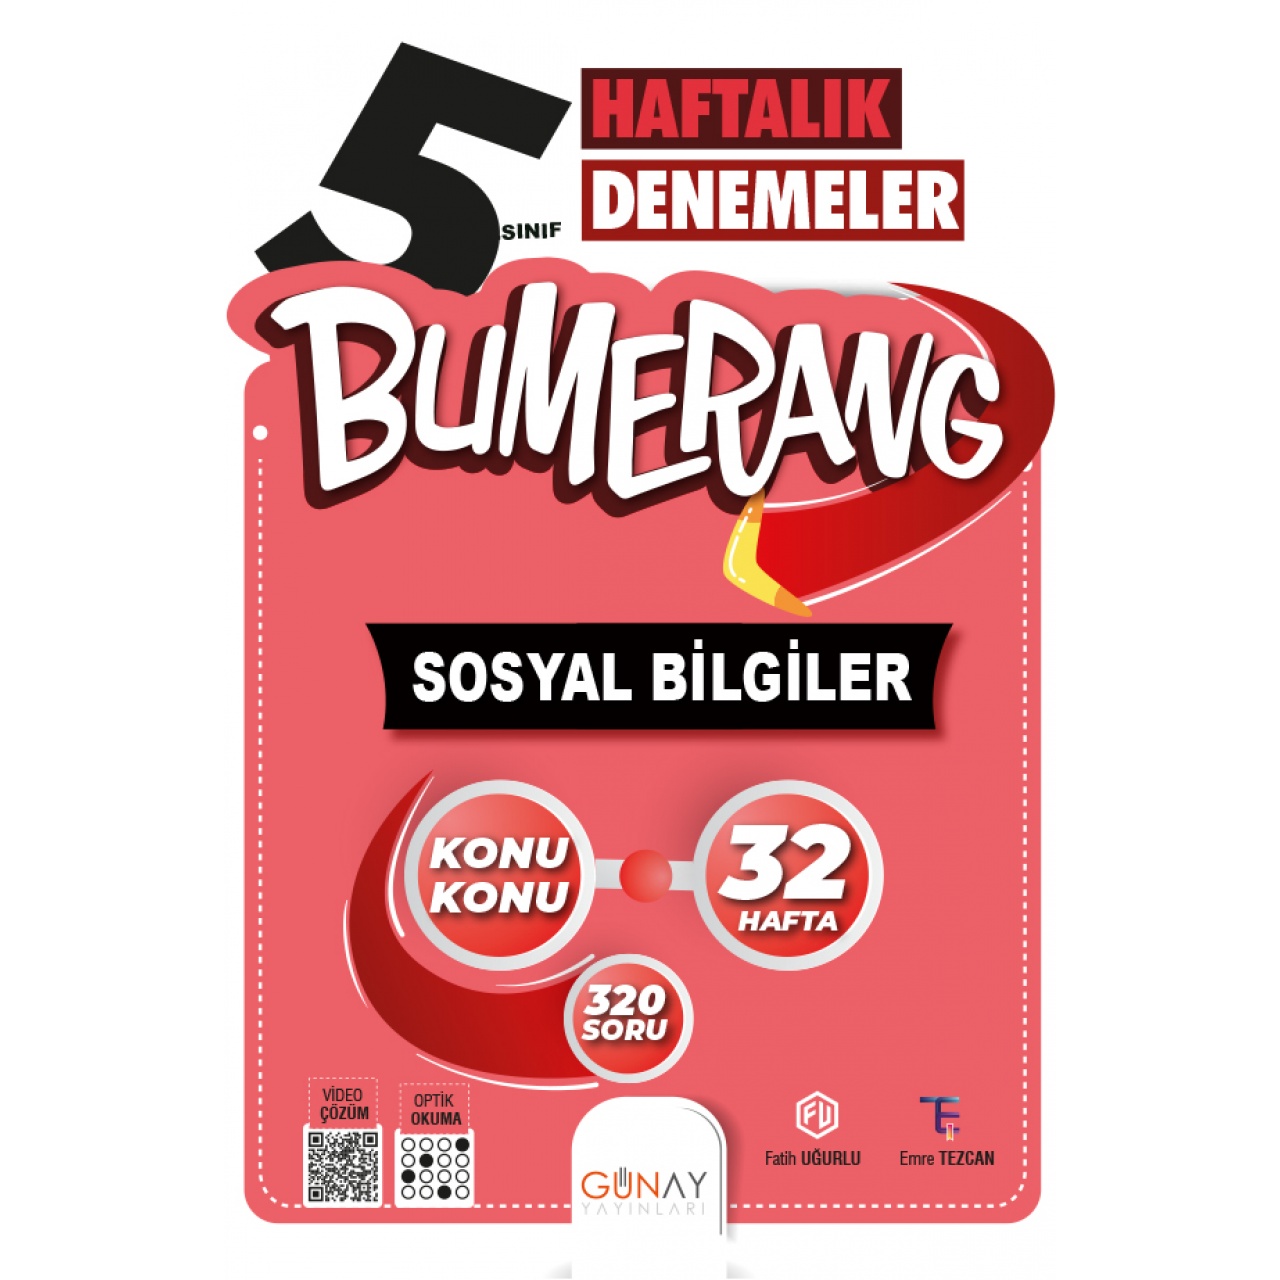 5. Sınıf Bumerang Sosyal Bilgiler Haftalık Denemeler Günay Yayınları